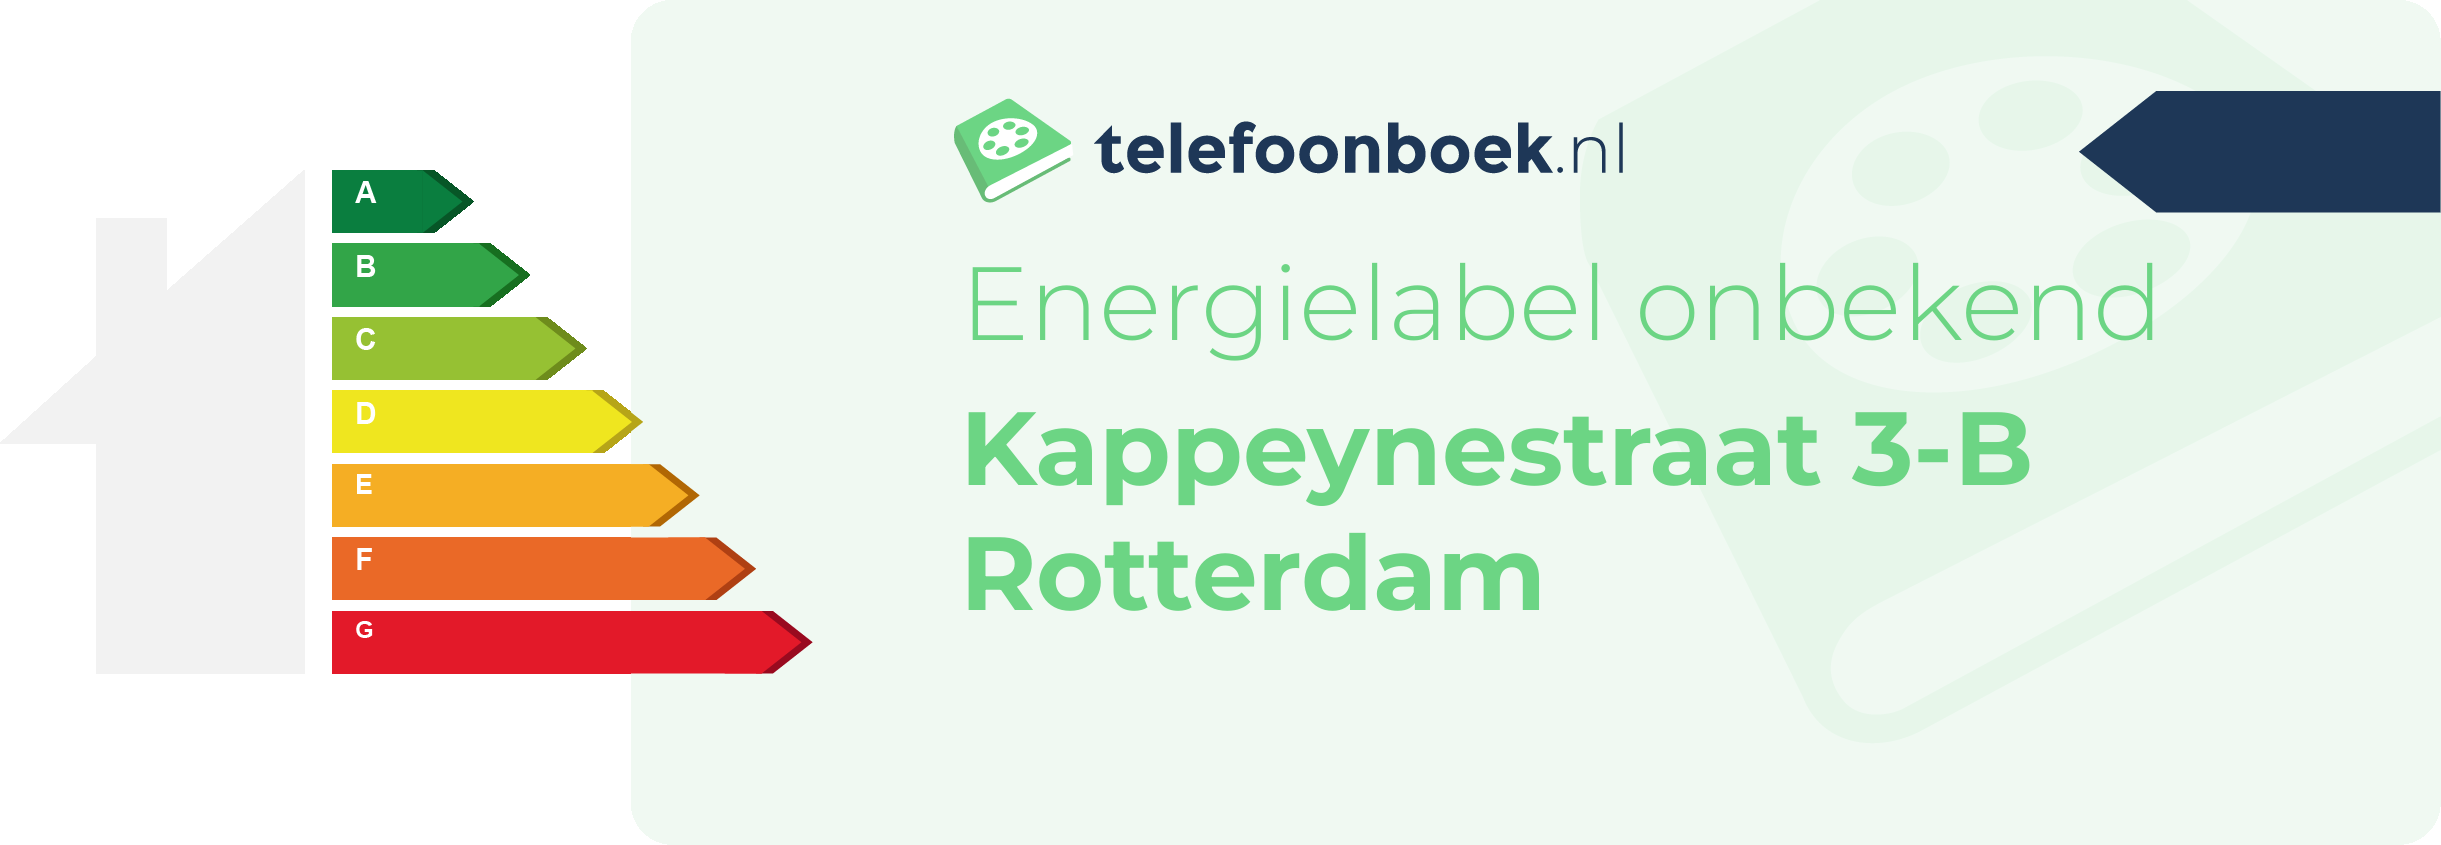 Energielabel Kappeynestraat 3-B Rotterdam